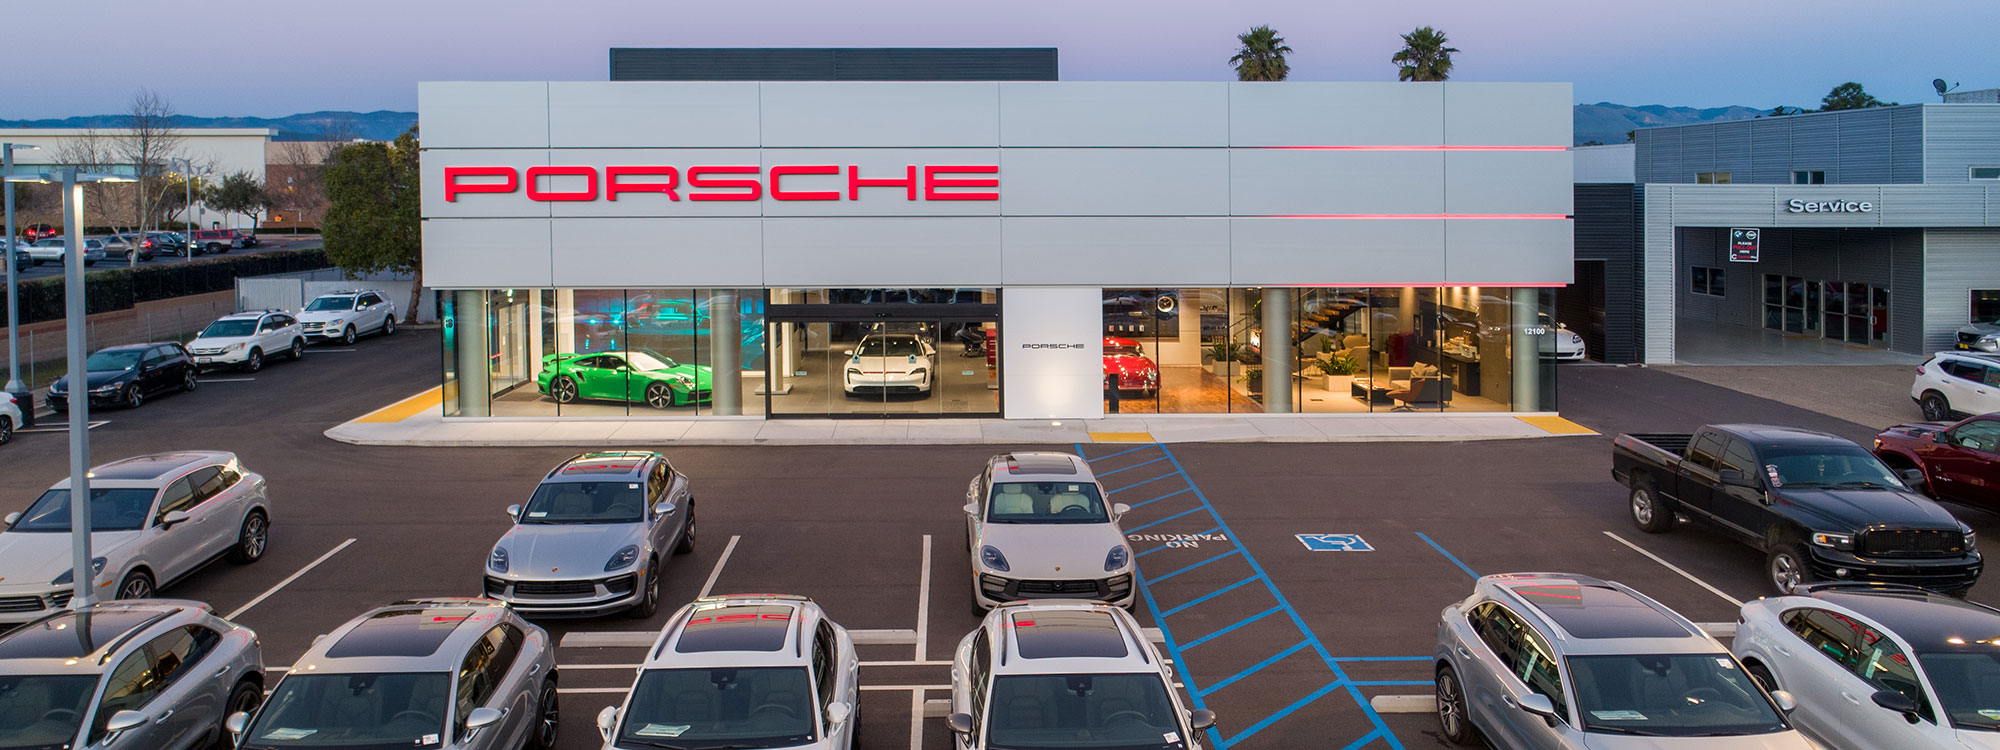 Automotive Services Porsche - Building Contractor and Builder San Luis Obispo, CA - JW Design & Construction